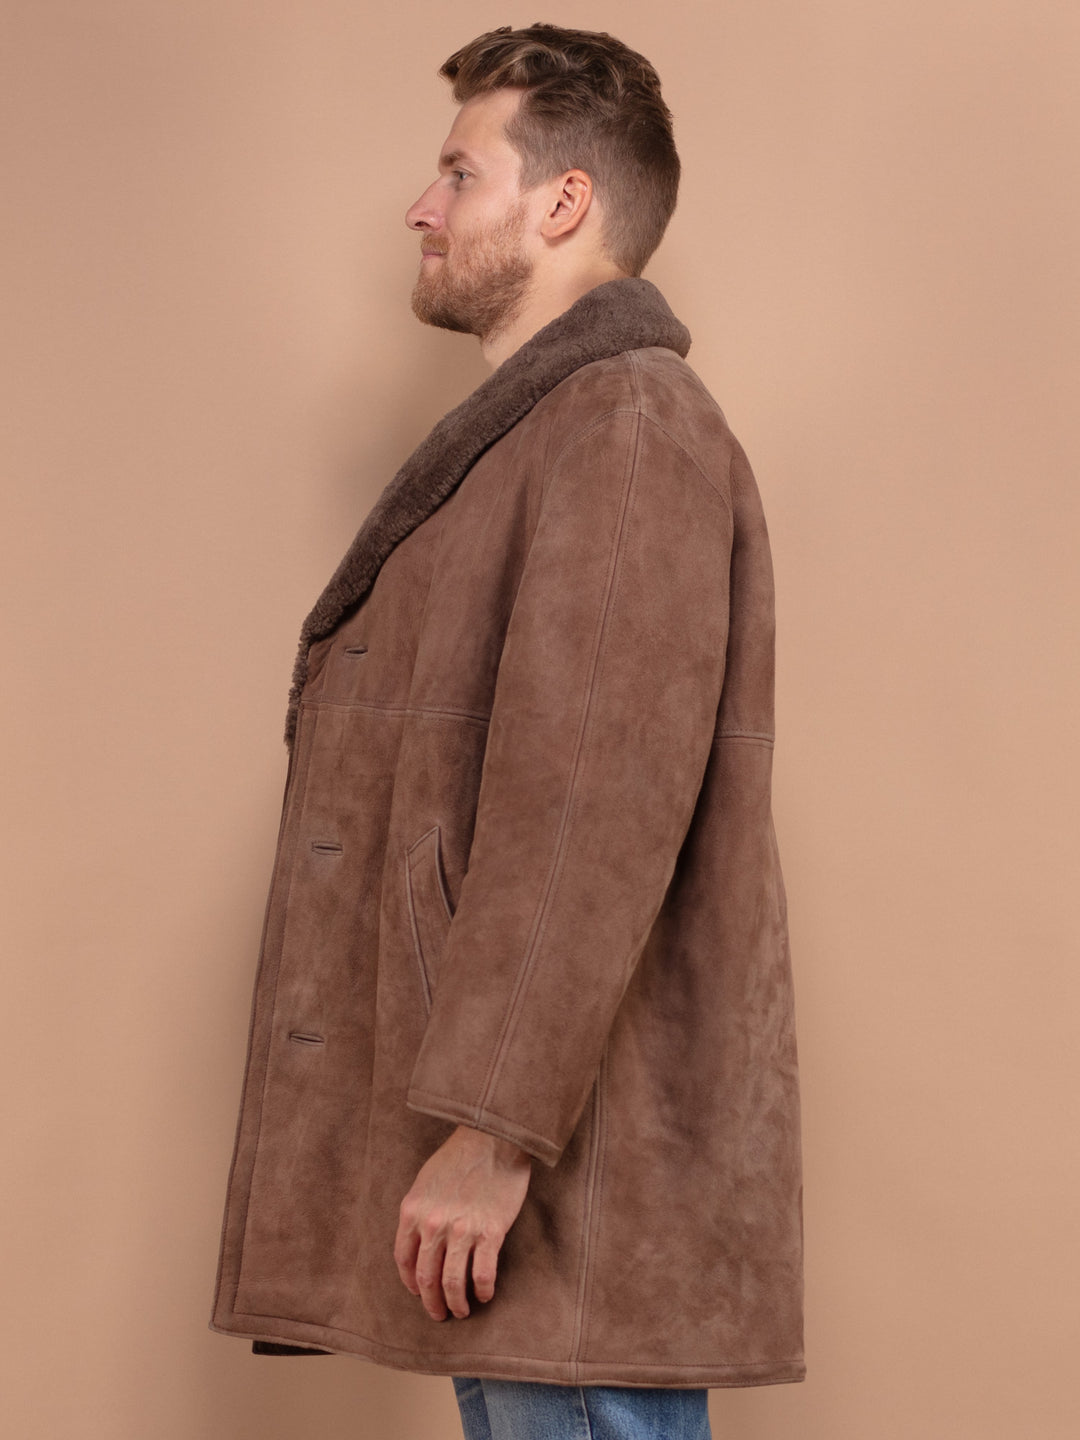 Sheepskin Coat Men, Vintage Suede Coat Large Size, Boho Men Coat, Warm Wool Coat, Old Fashioned Mens Overcoat, Brown Fur Coat, Pre Loved